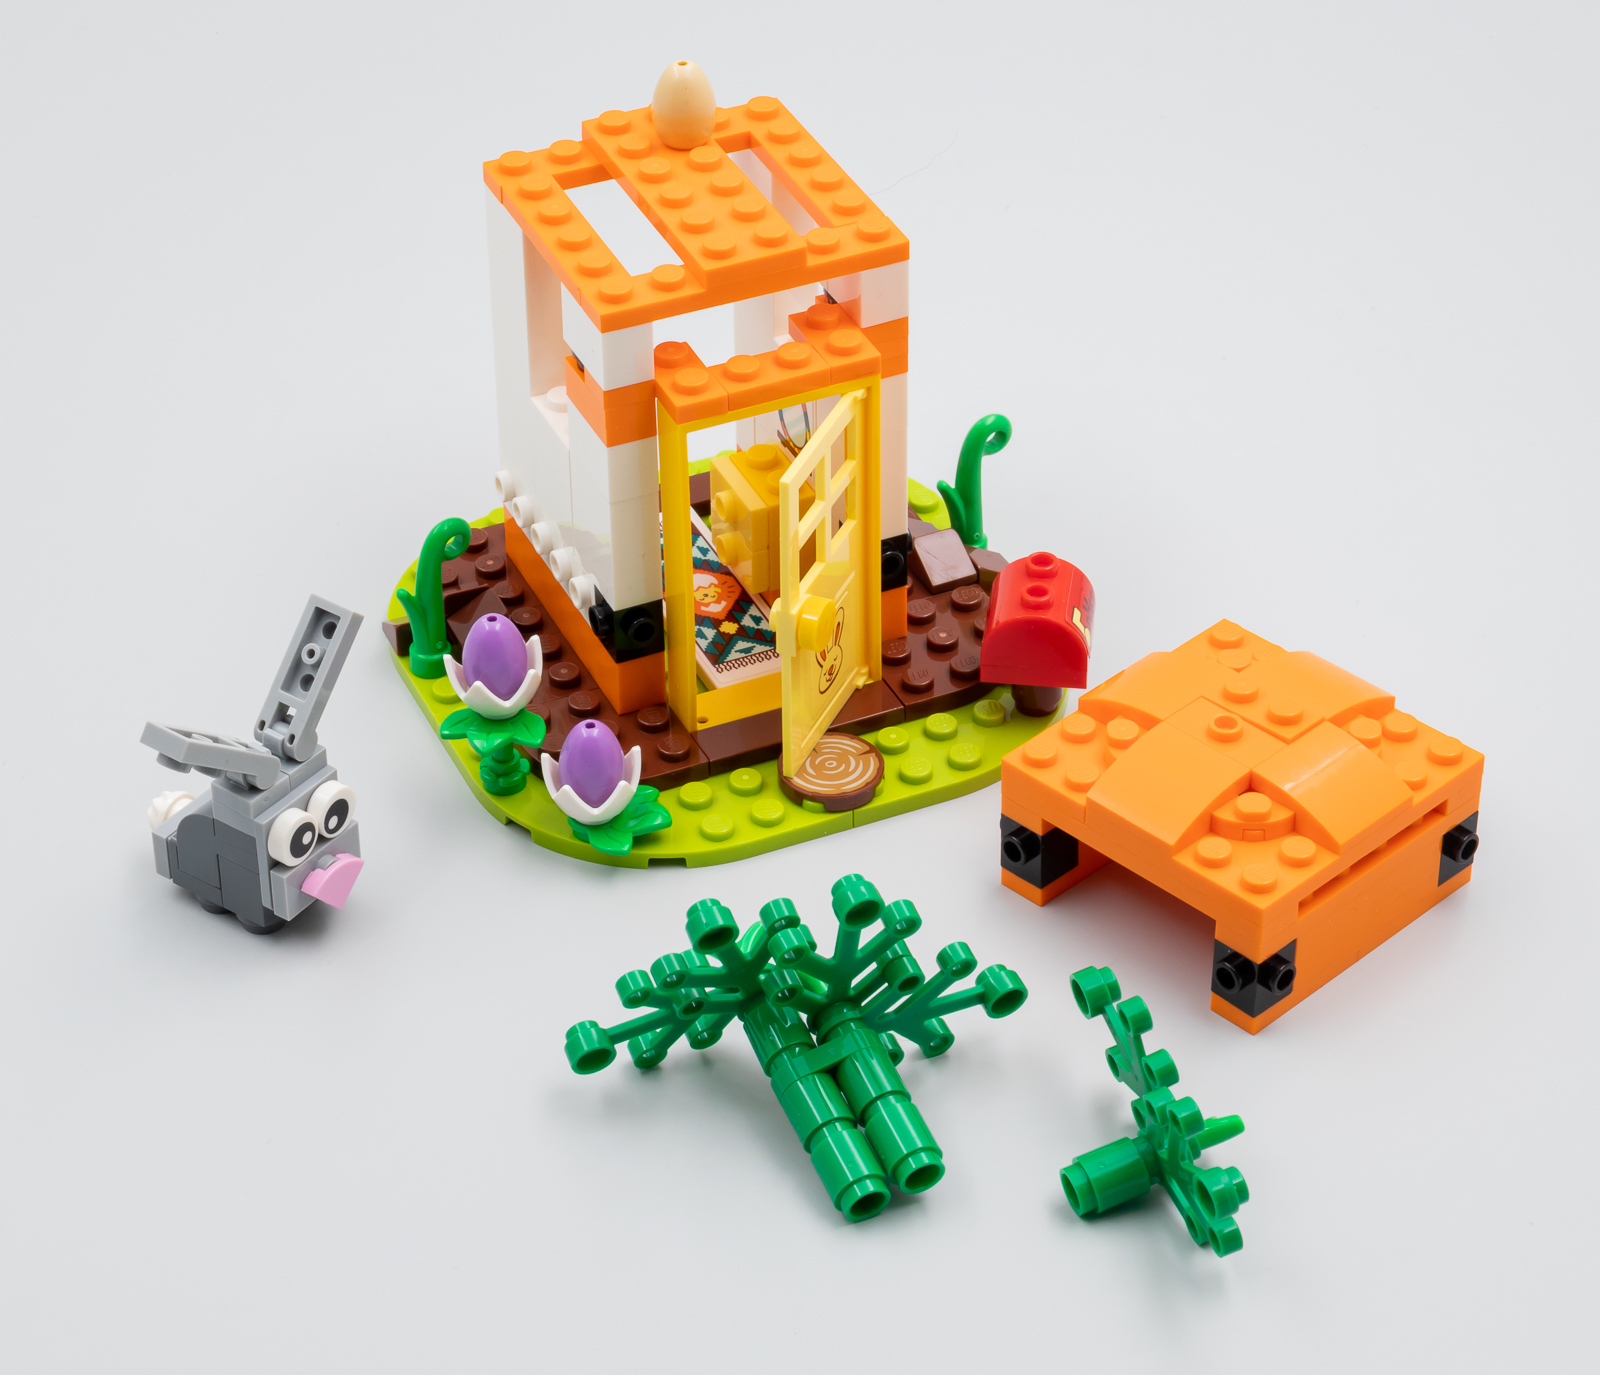 Petit lapin - Pièce LEGO® 49584 - Super Briques